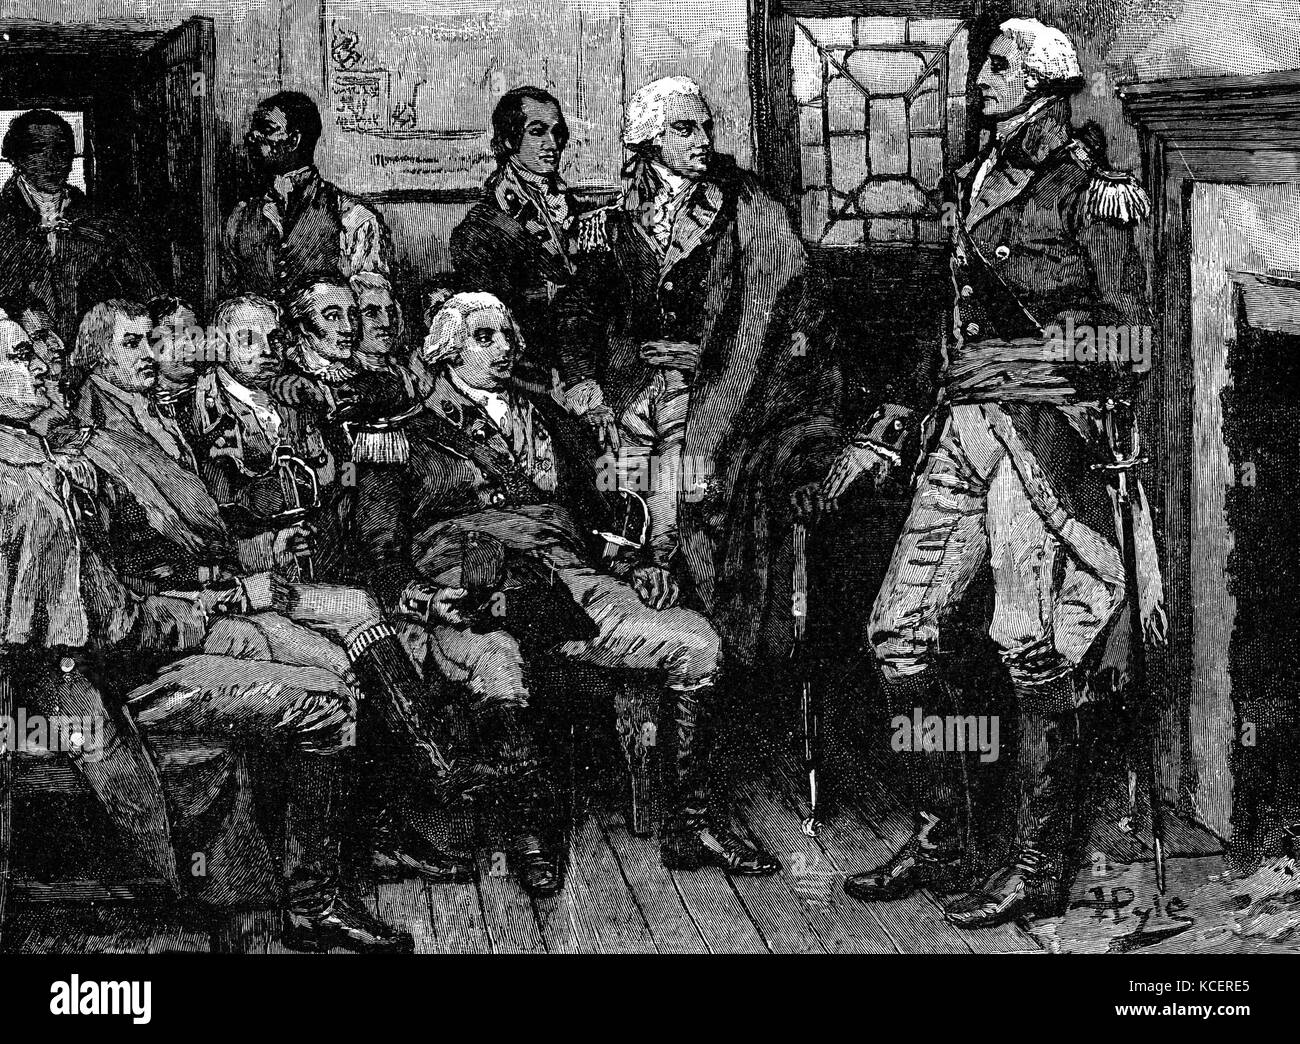 Gravur mit George Washington (1732-1799) ein US-amerikanischer Politiker, Soldaten und der erste Präsident der Vereinigten Staaten, Treffen mit seiner Generäle. Vom 18. Jahrhundert Stockfoto